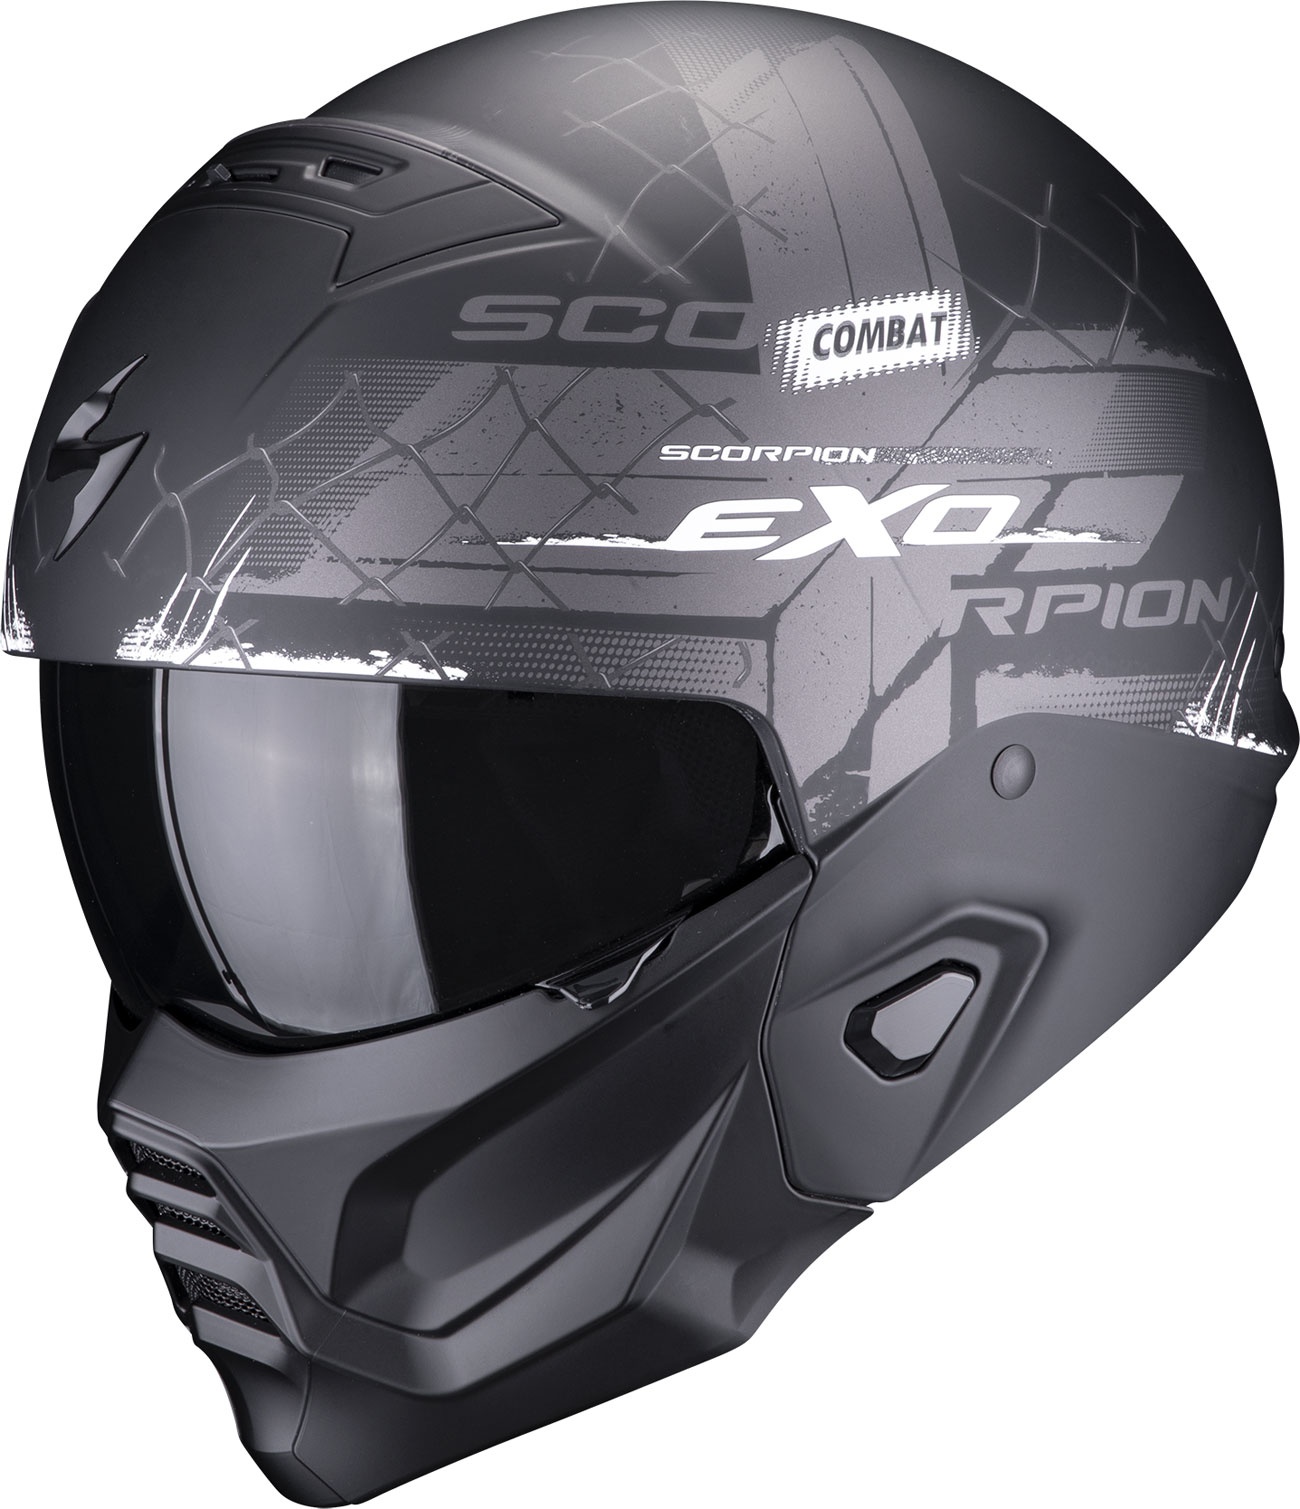 Scorpion EXO-Combat II Xenon, Modularhelm - Matt Schwarz/Grau/Weiß - S